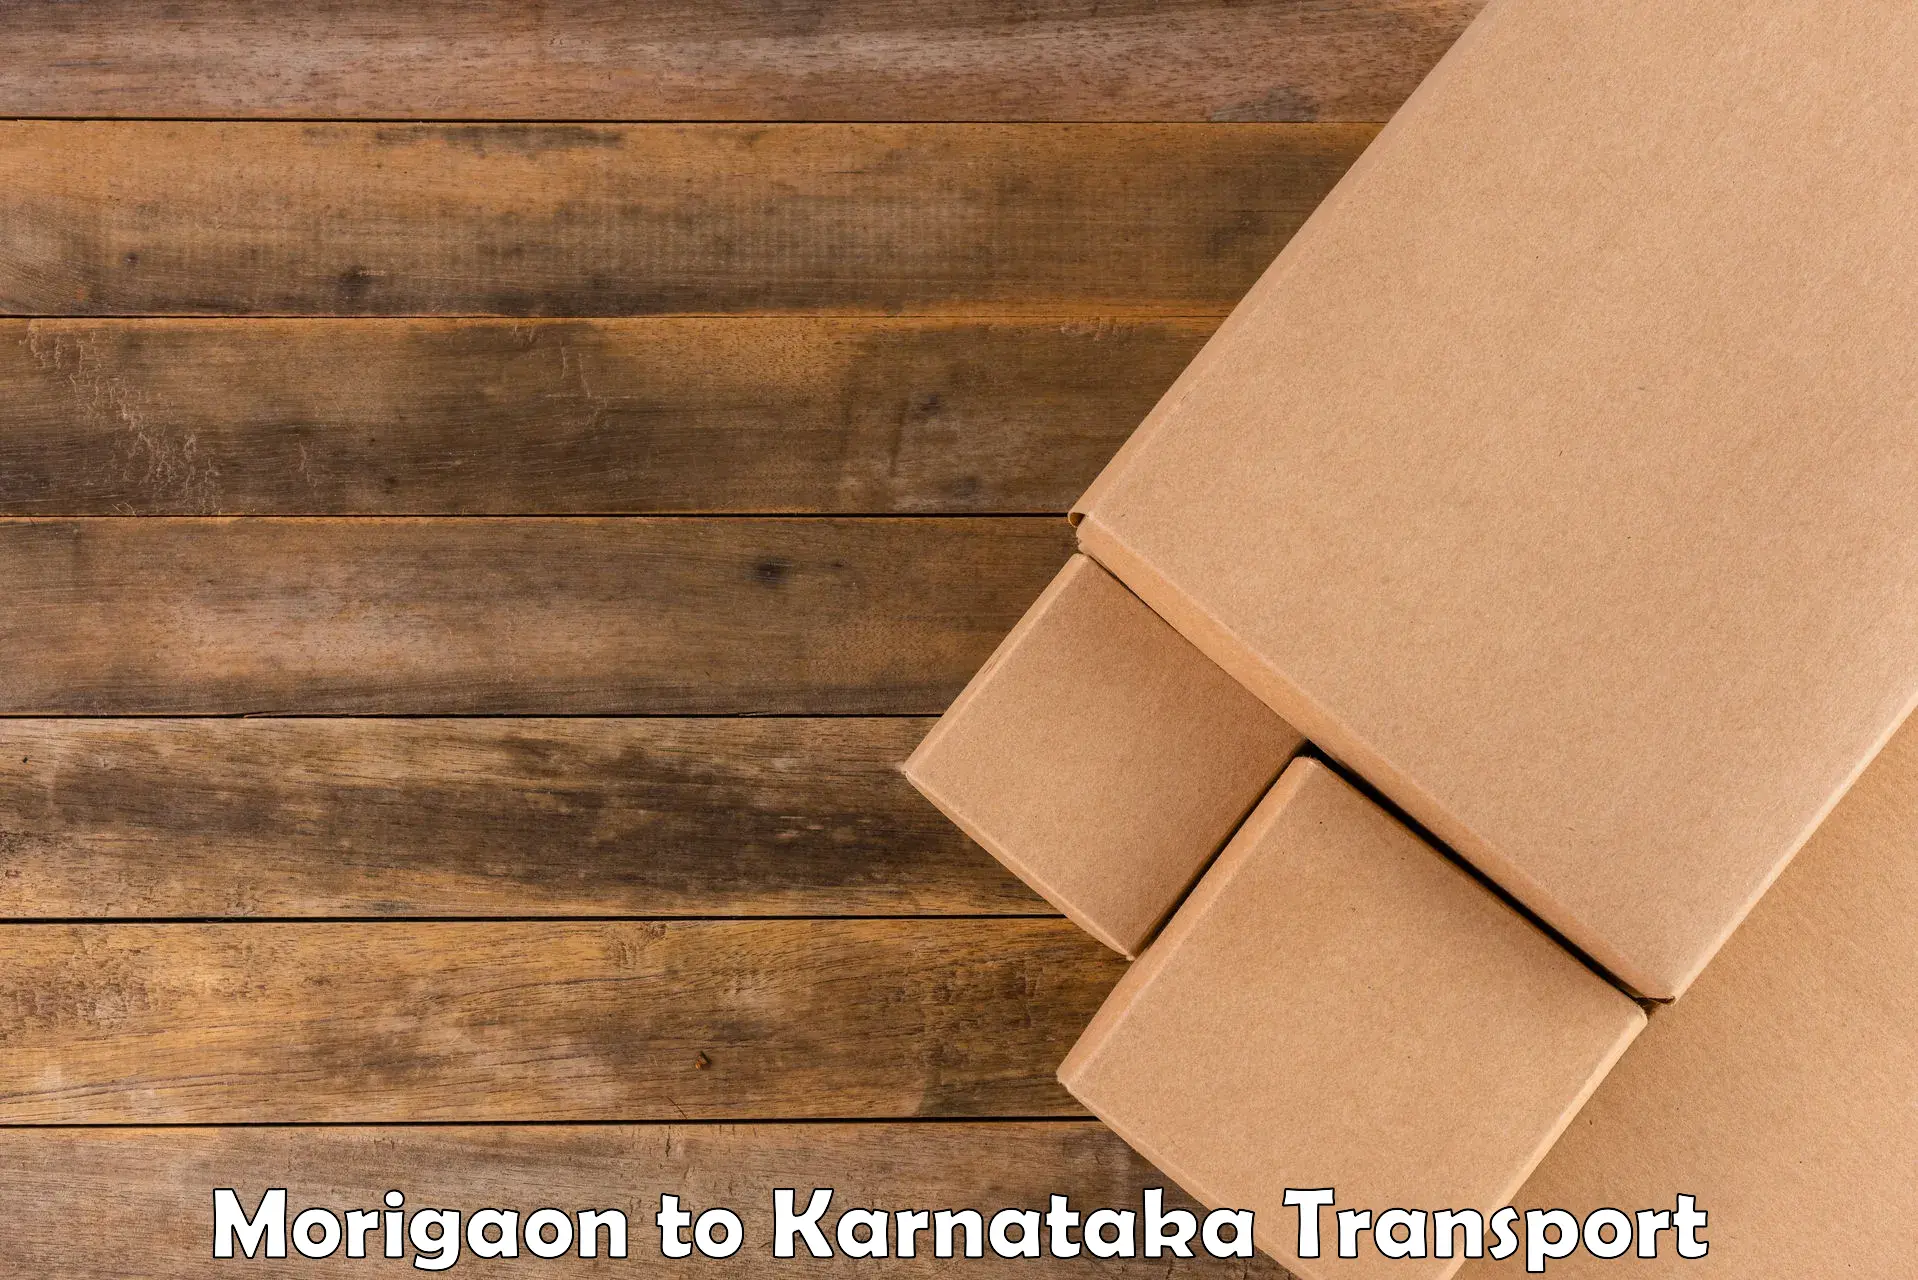 Nearby transport service Morigaon to Srirangapatna